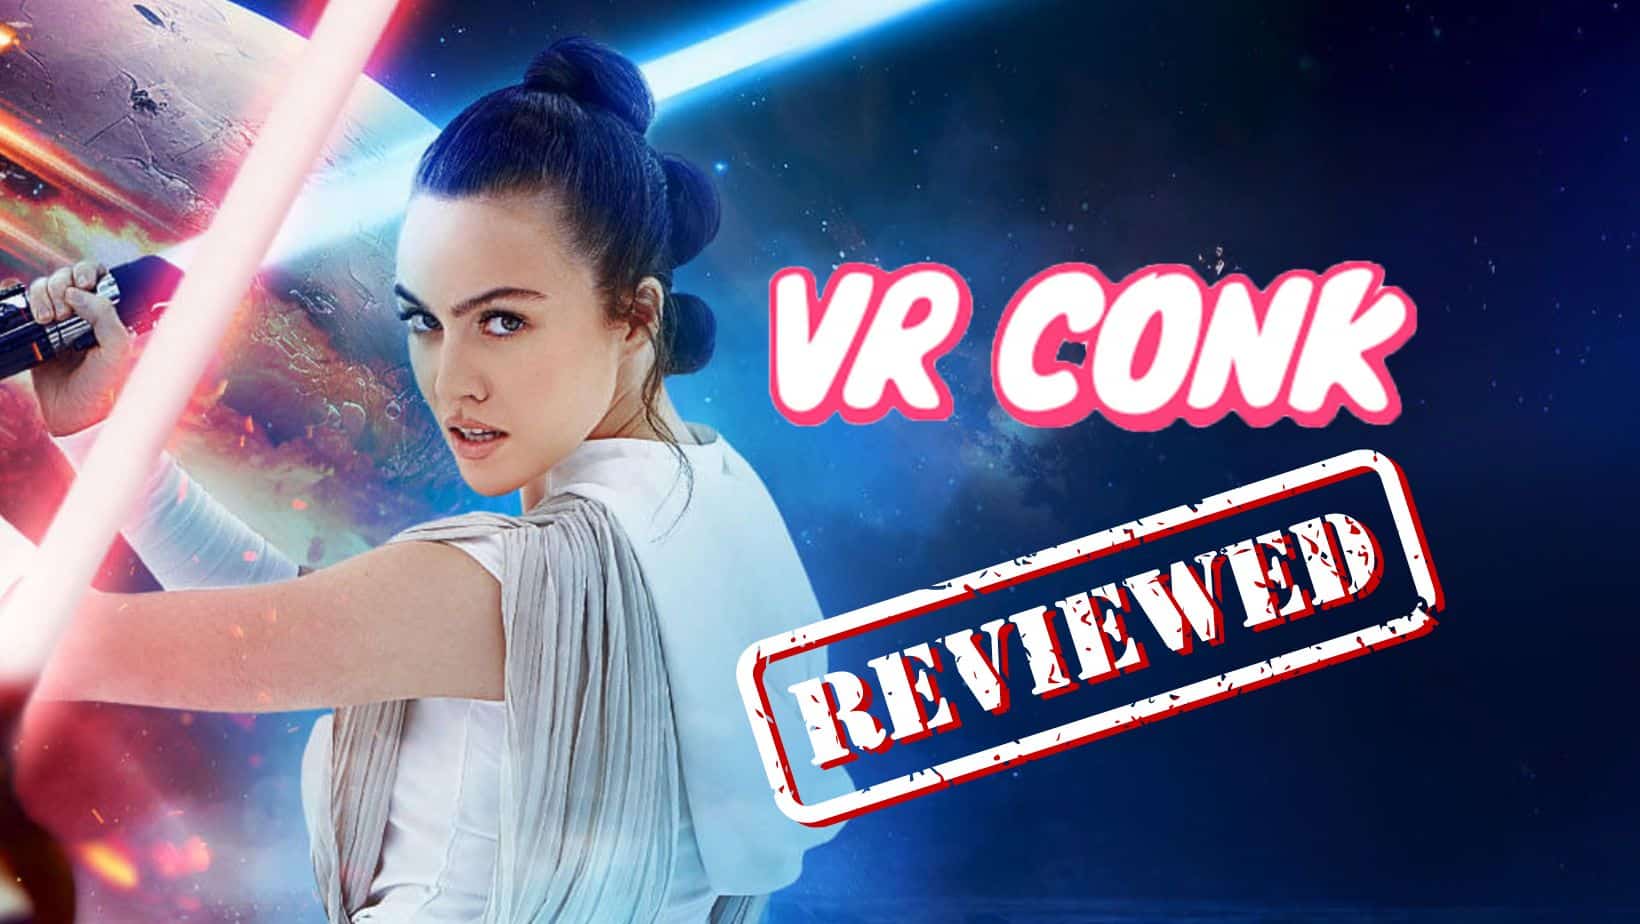 VR Conk Review – Is It a Legit Website?